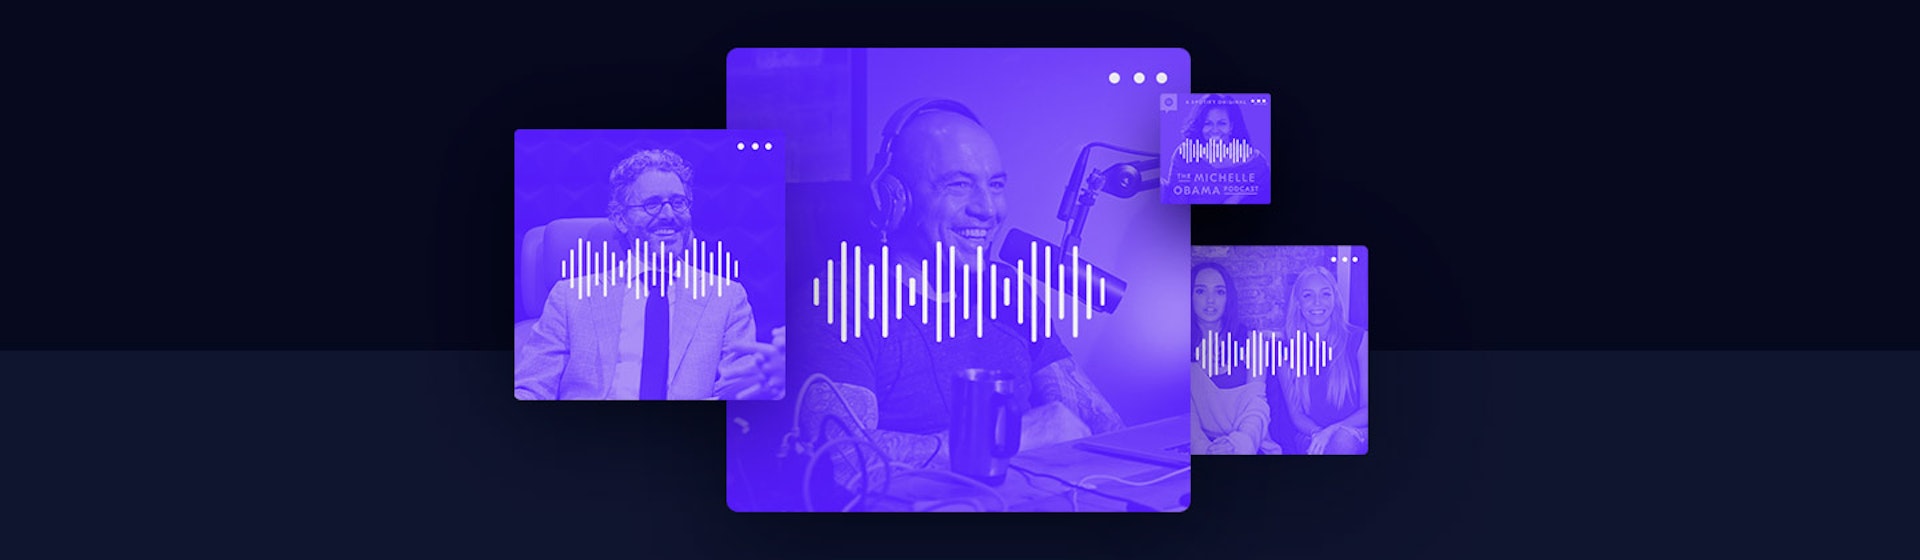 Dale play a los podcast más escuchados en Latinoamérica